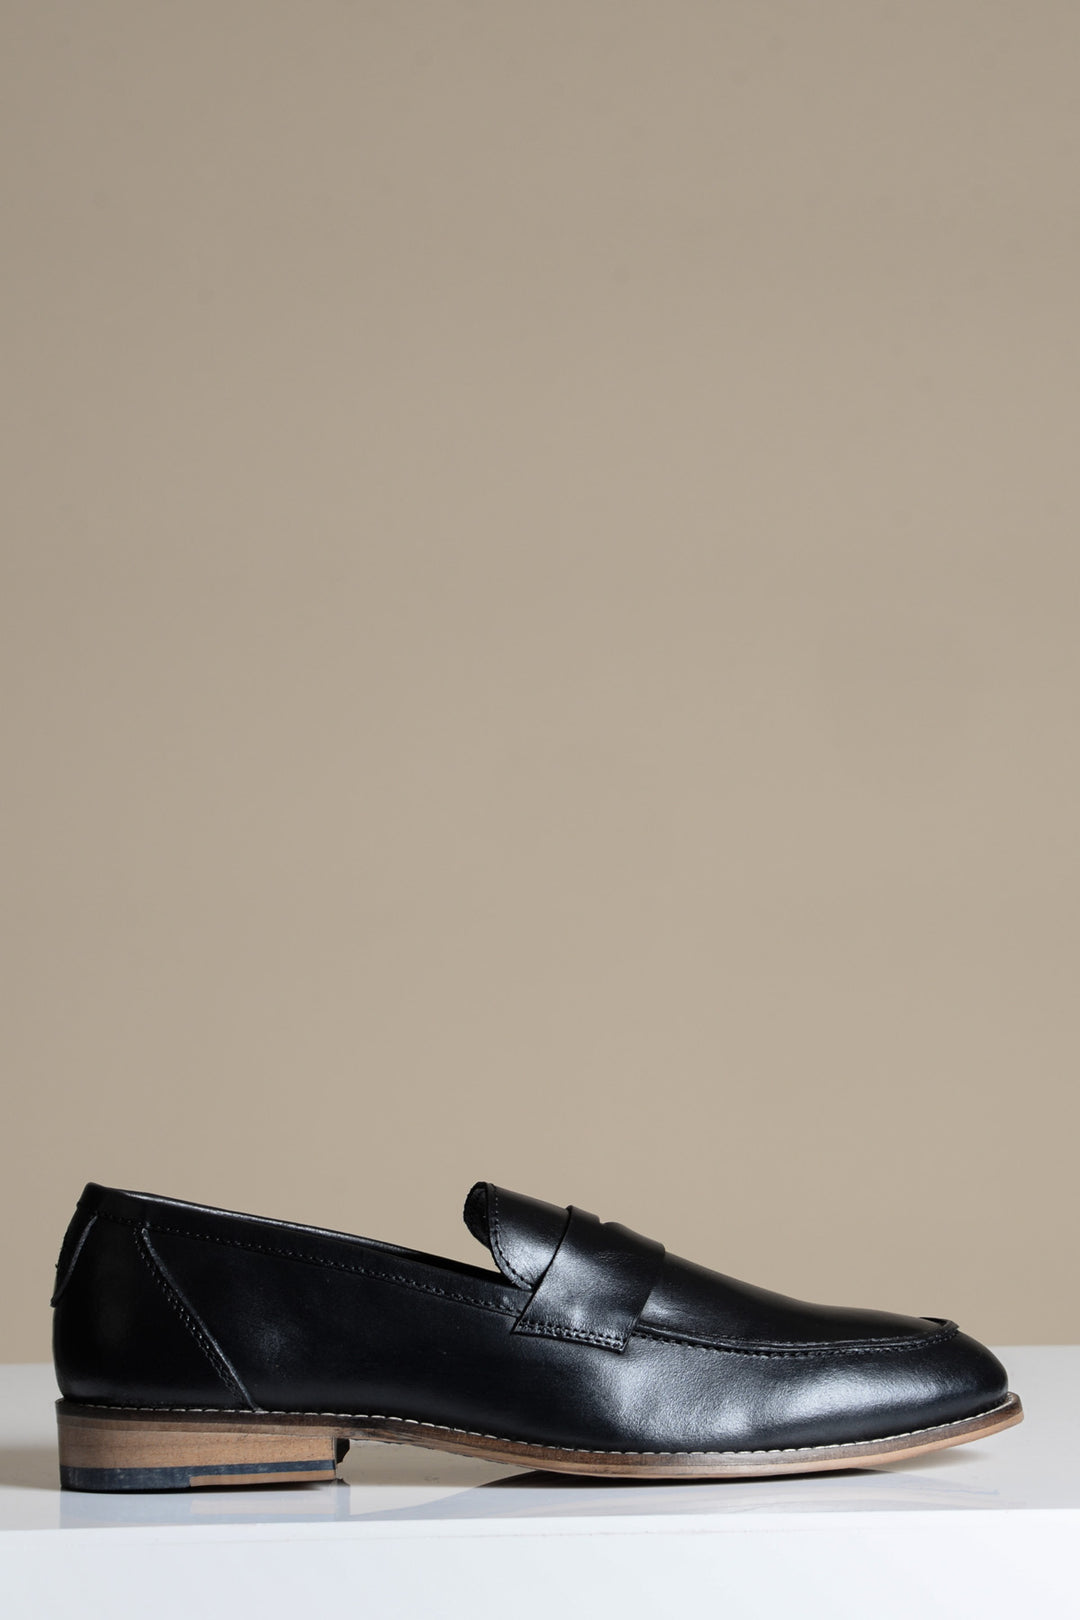 JASPER - Black Leather Penny Loafer Shoe